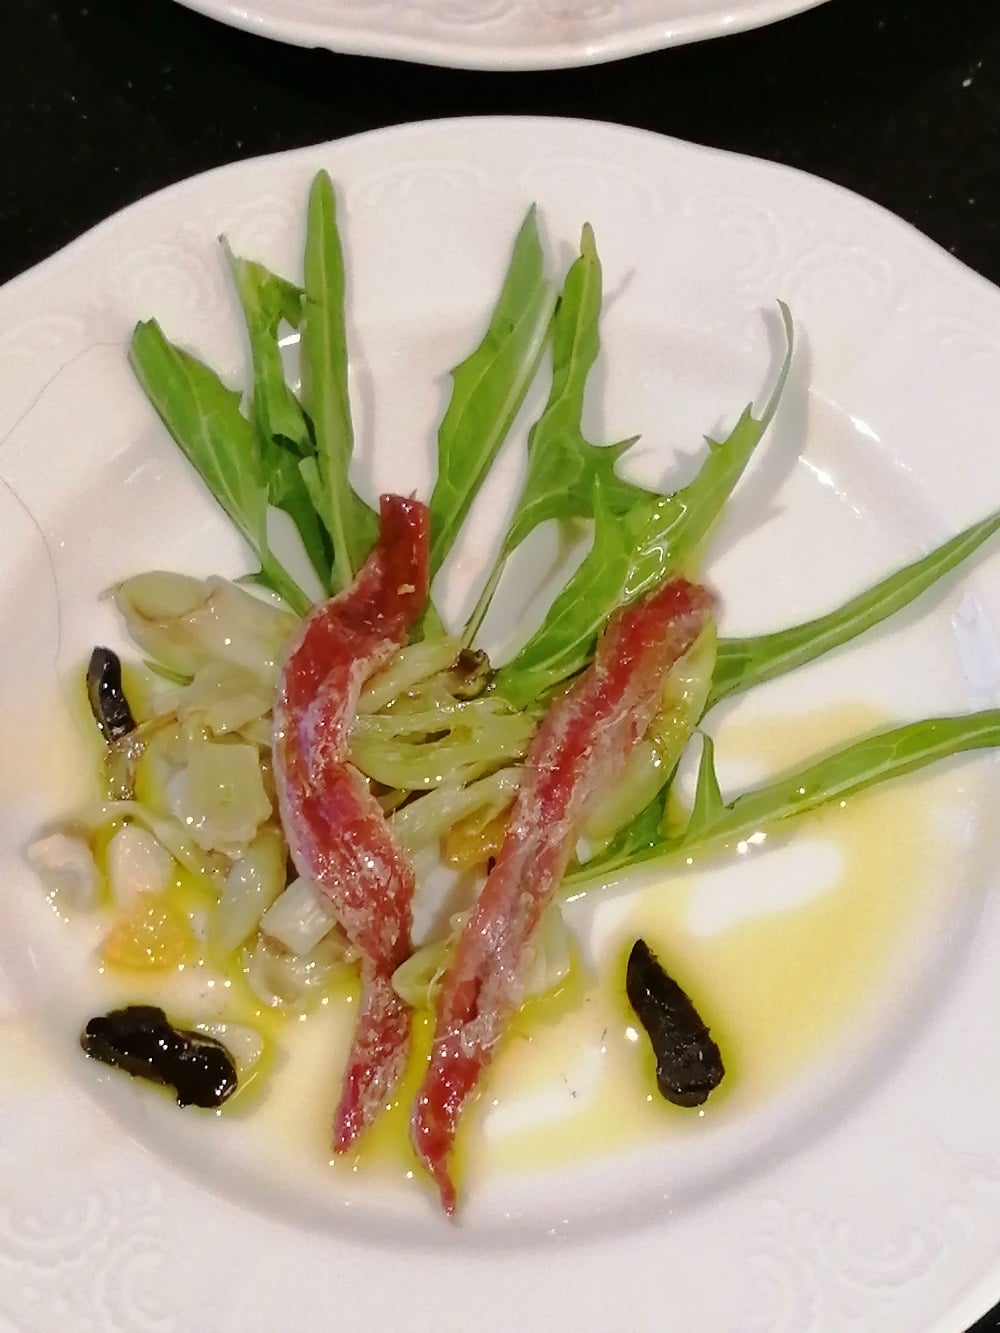 punterelle Sardellen, schwarzer Knoblauch und Rucola mit Olivenöl auf einem weißen Teller angerichtet